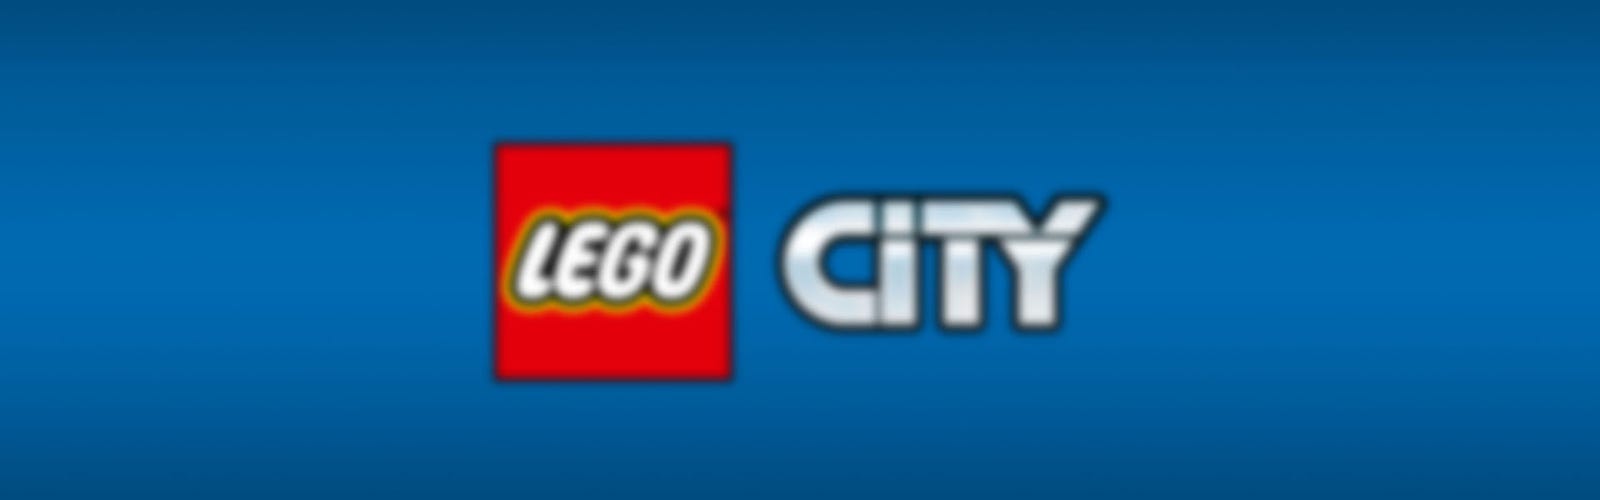 LEGO City 60336 Le train de marchandises telecommande 7+